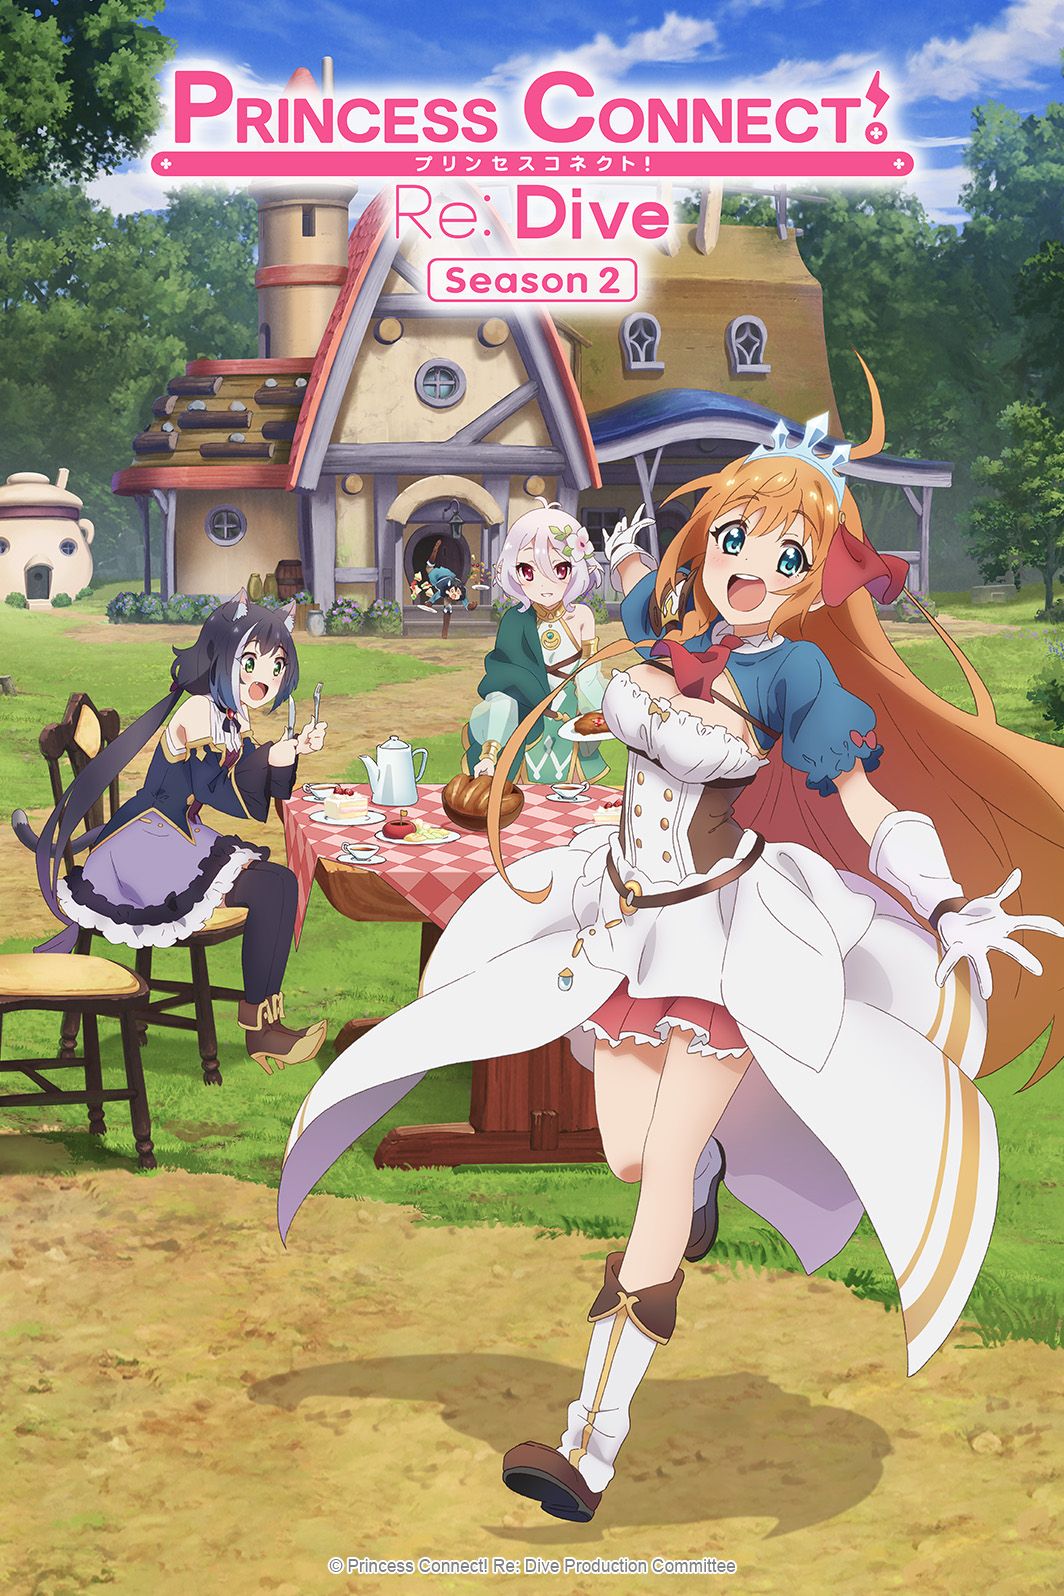 Anime Princess Connect Re Dive Saison 2 Episode 10 Menu 10